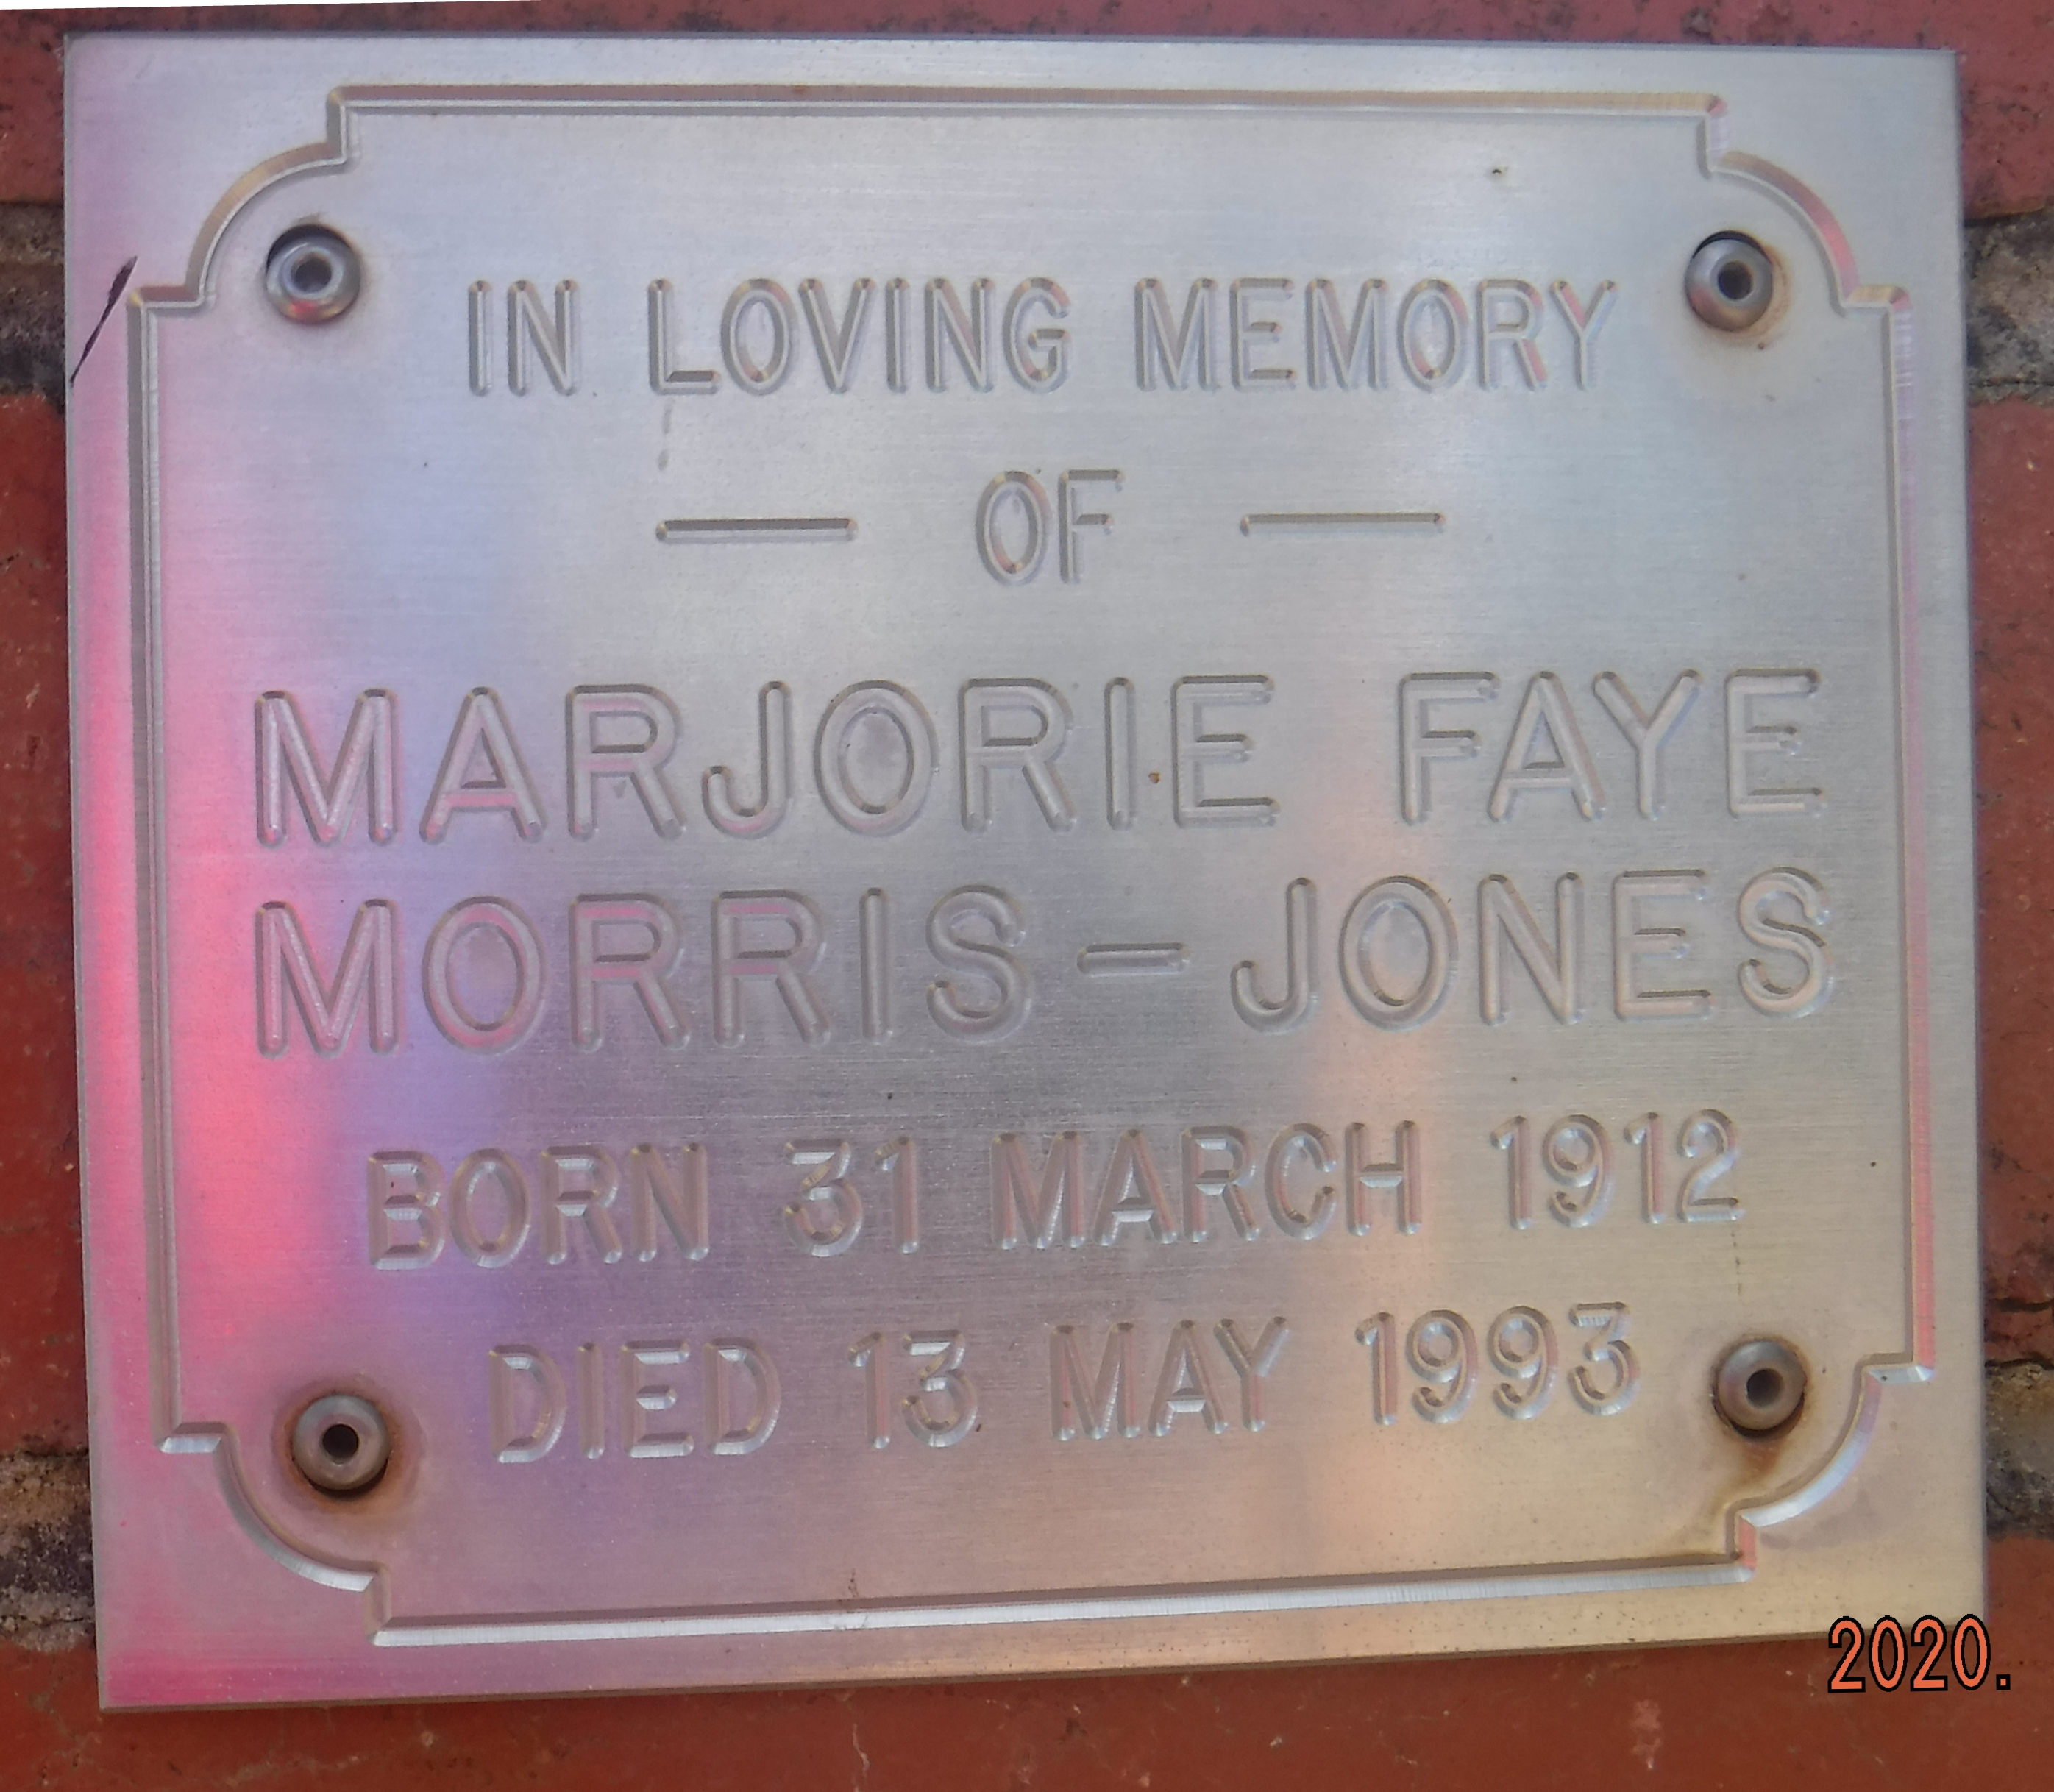 MORRIS-JONES Marjorie.JPG